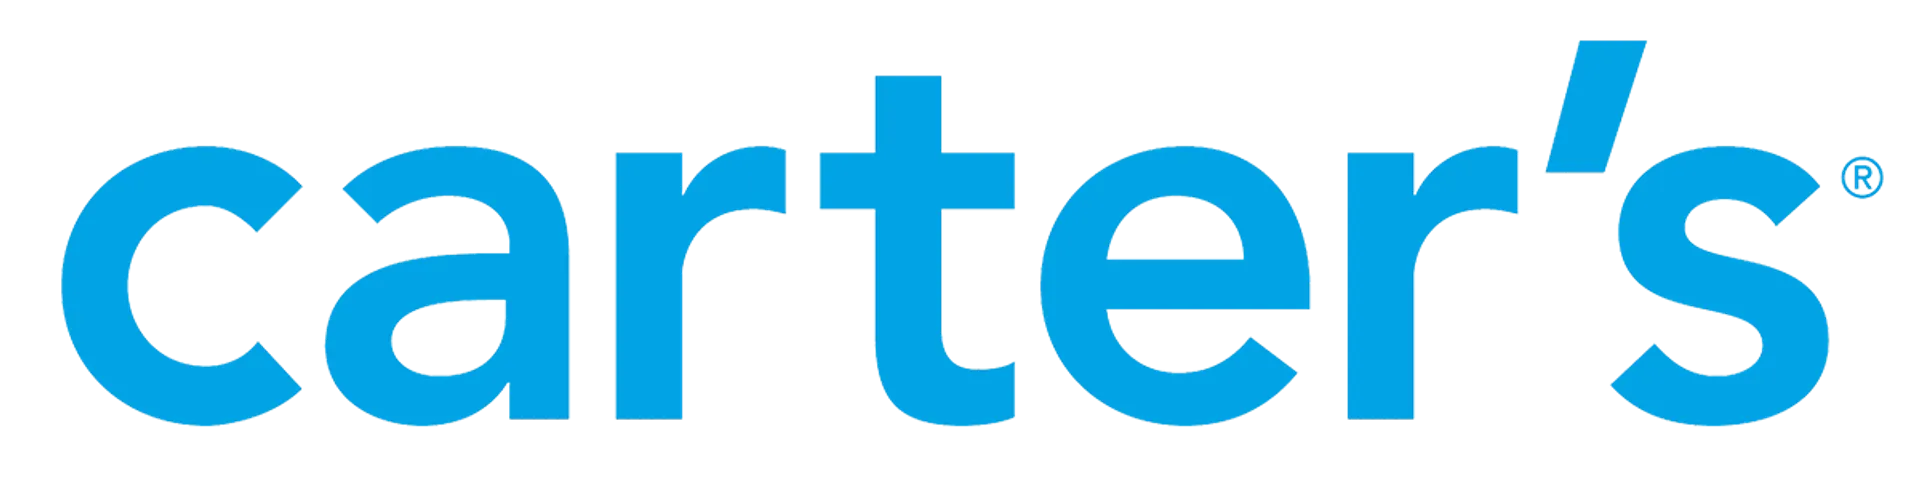 CARTER'S logo